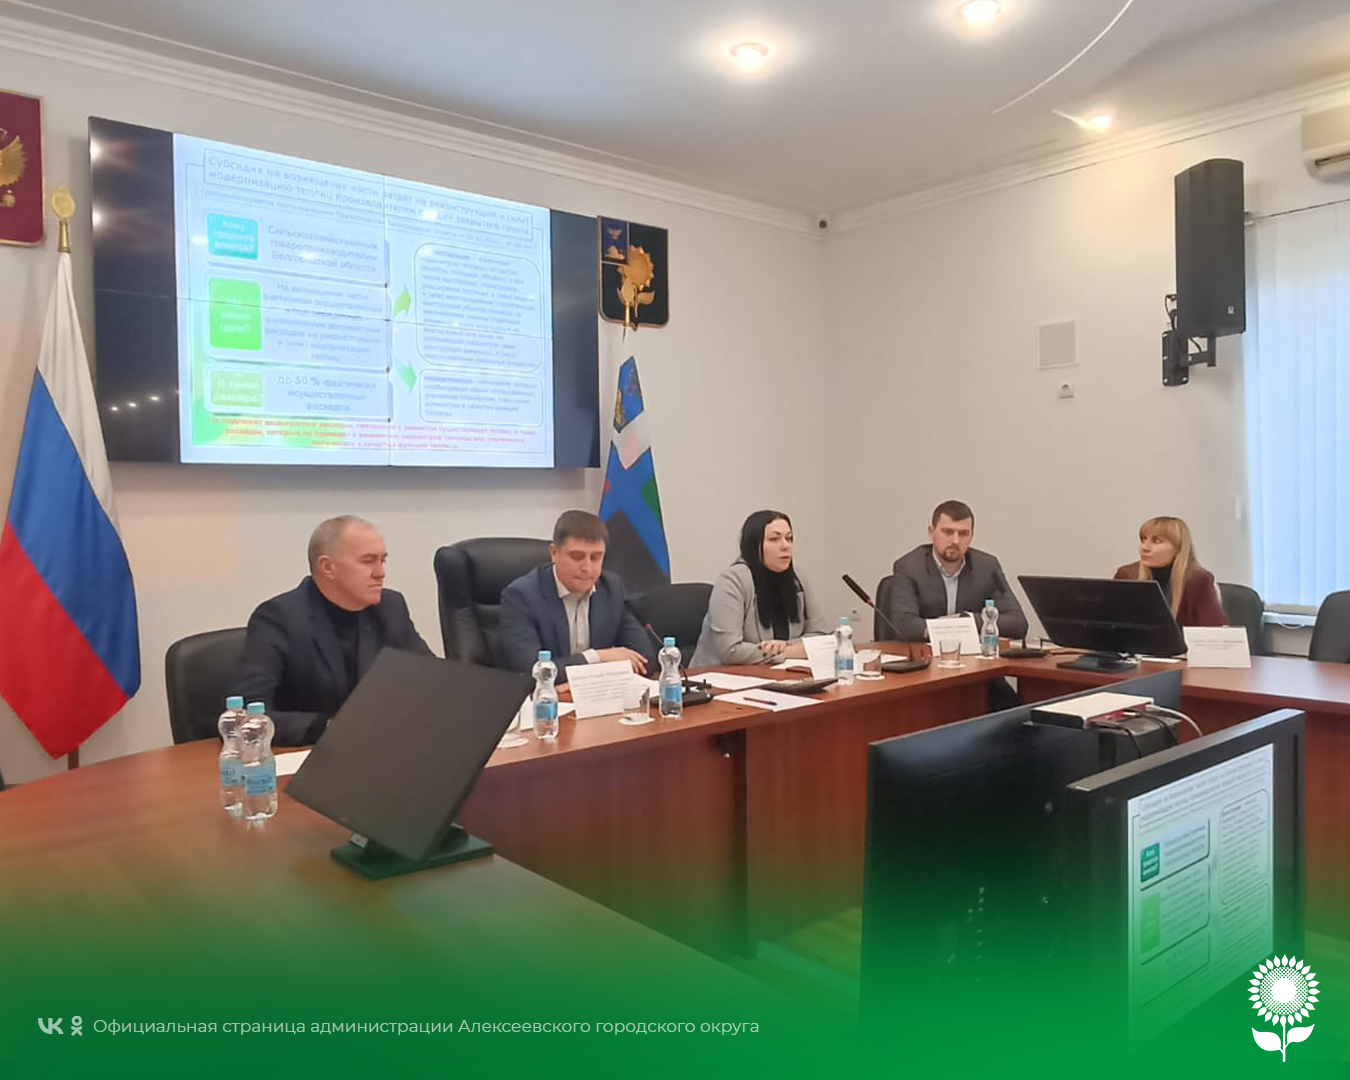 В зале заседания администрации Алексеевского городского округа проведено совещание с представителями министерства сельского хозяйства и продовольствия Белгородской области, а также ОГАУ «ИЦК АПК»